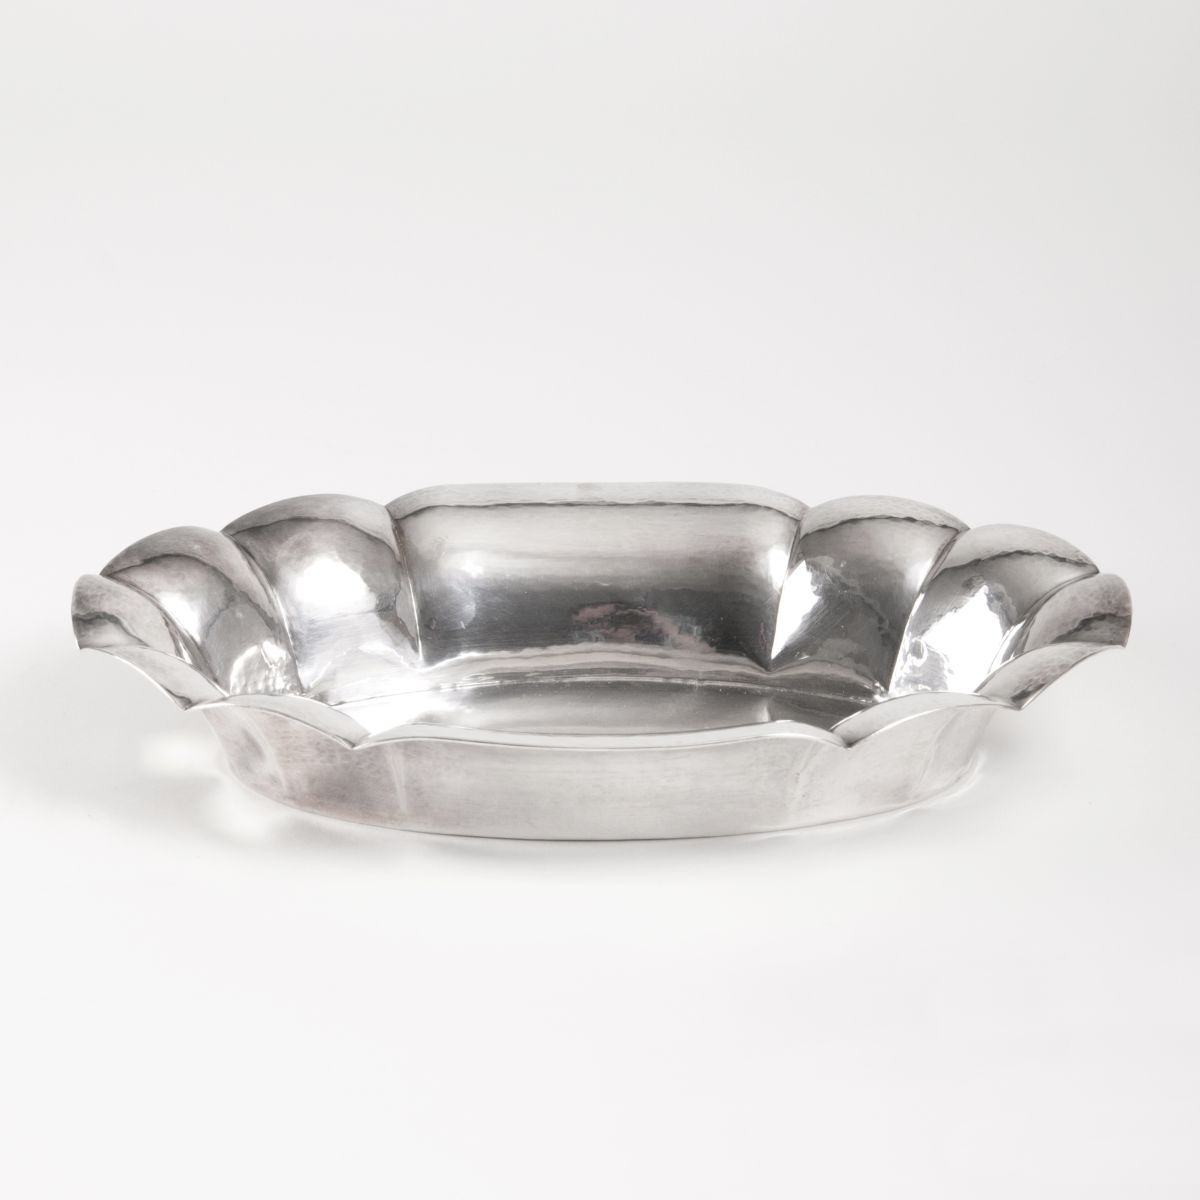 An Art Déco bowl